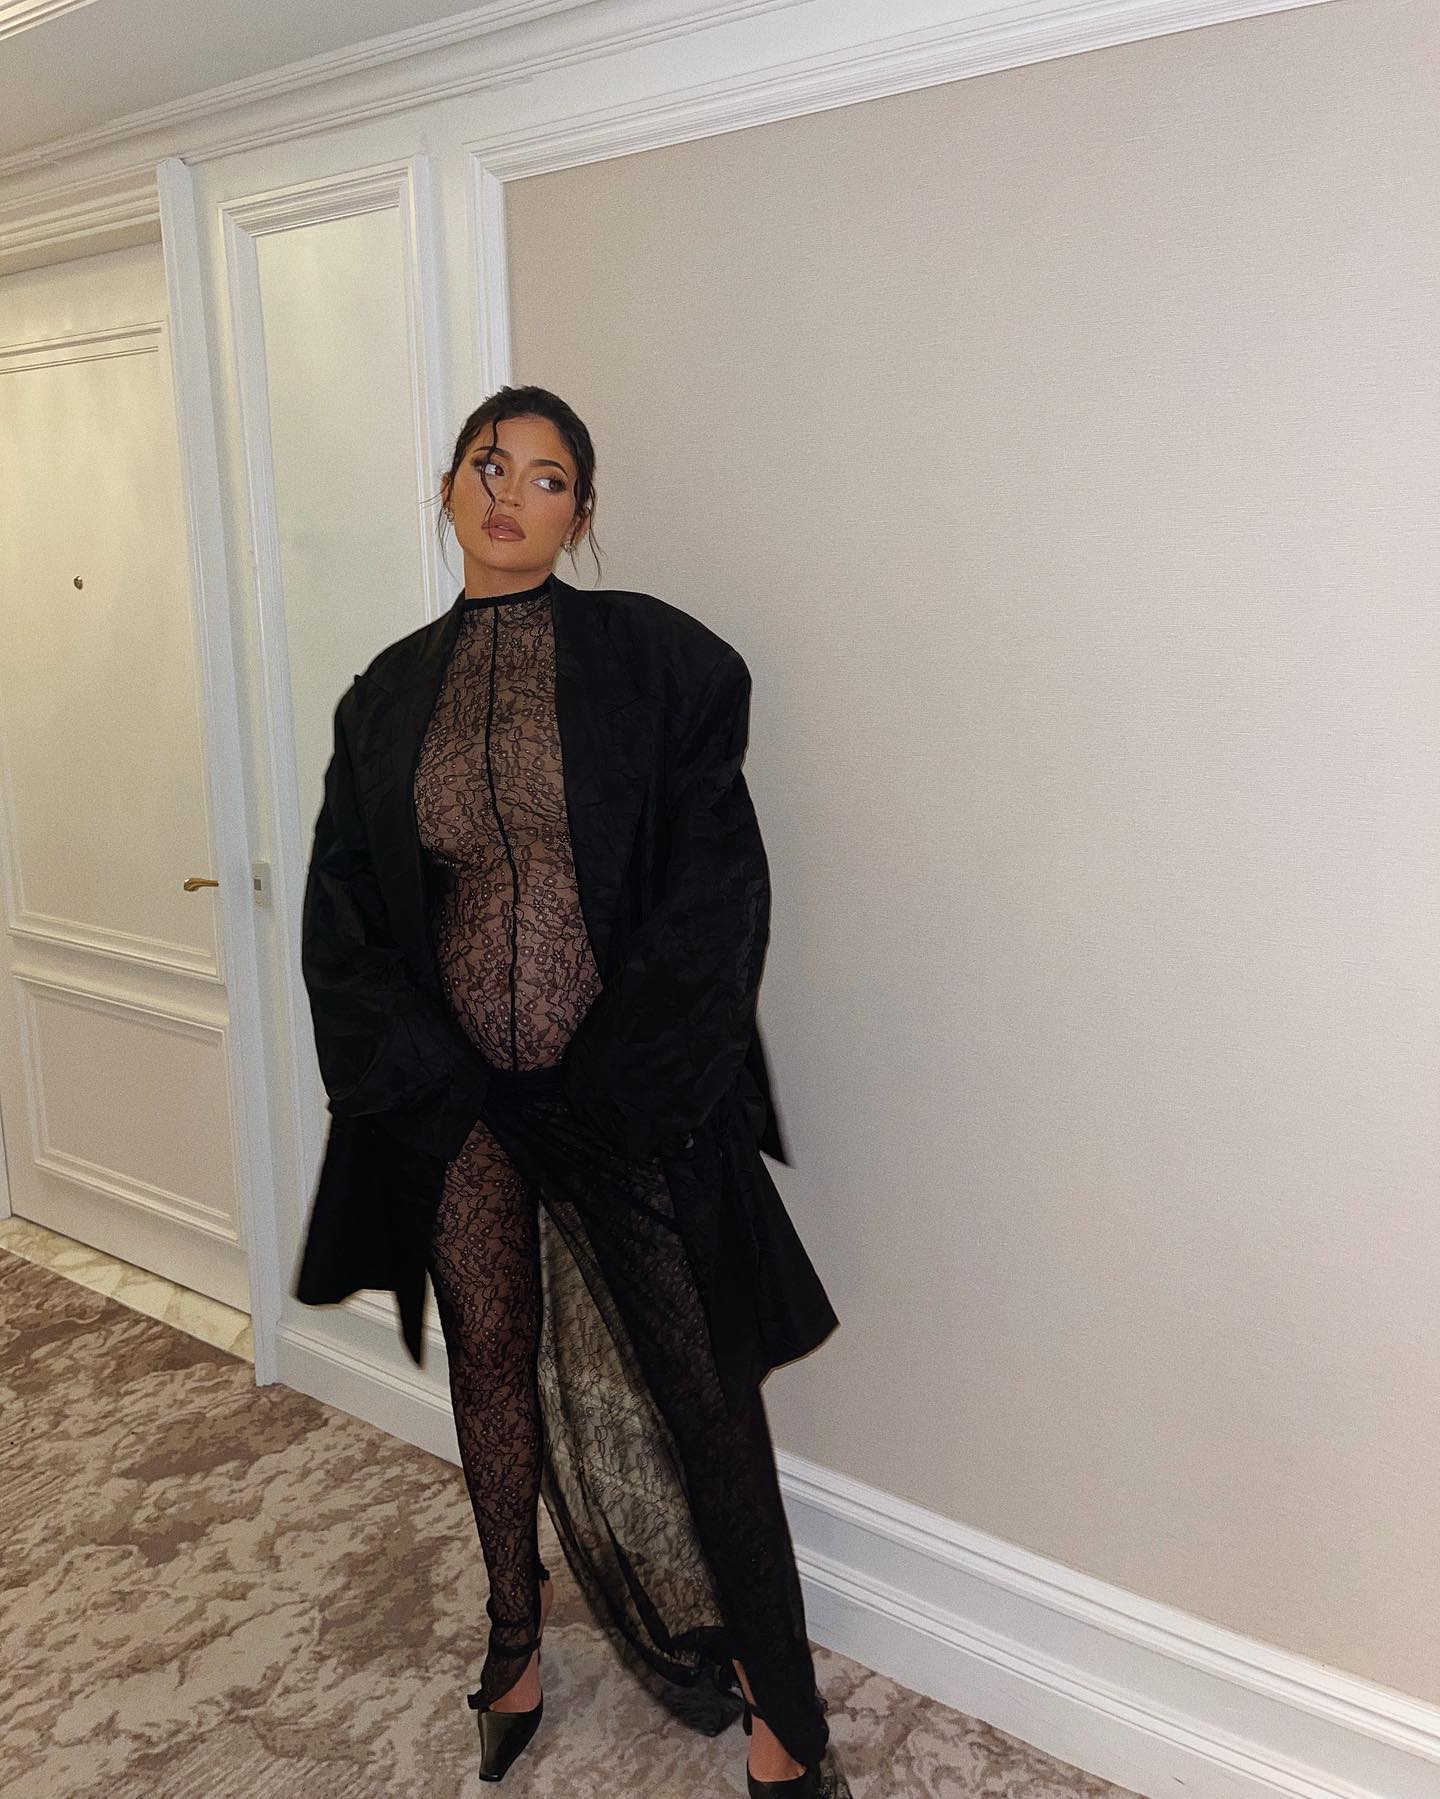 Кайли Дженнер: модель с впечатляющими формами (фото и биография) 9 Kylie Jenner